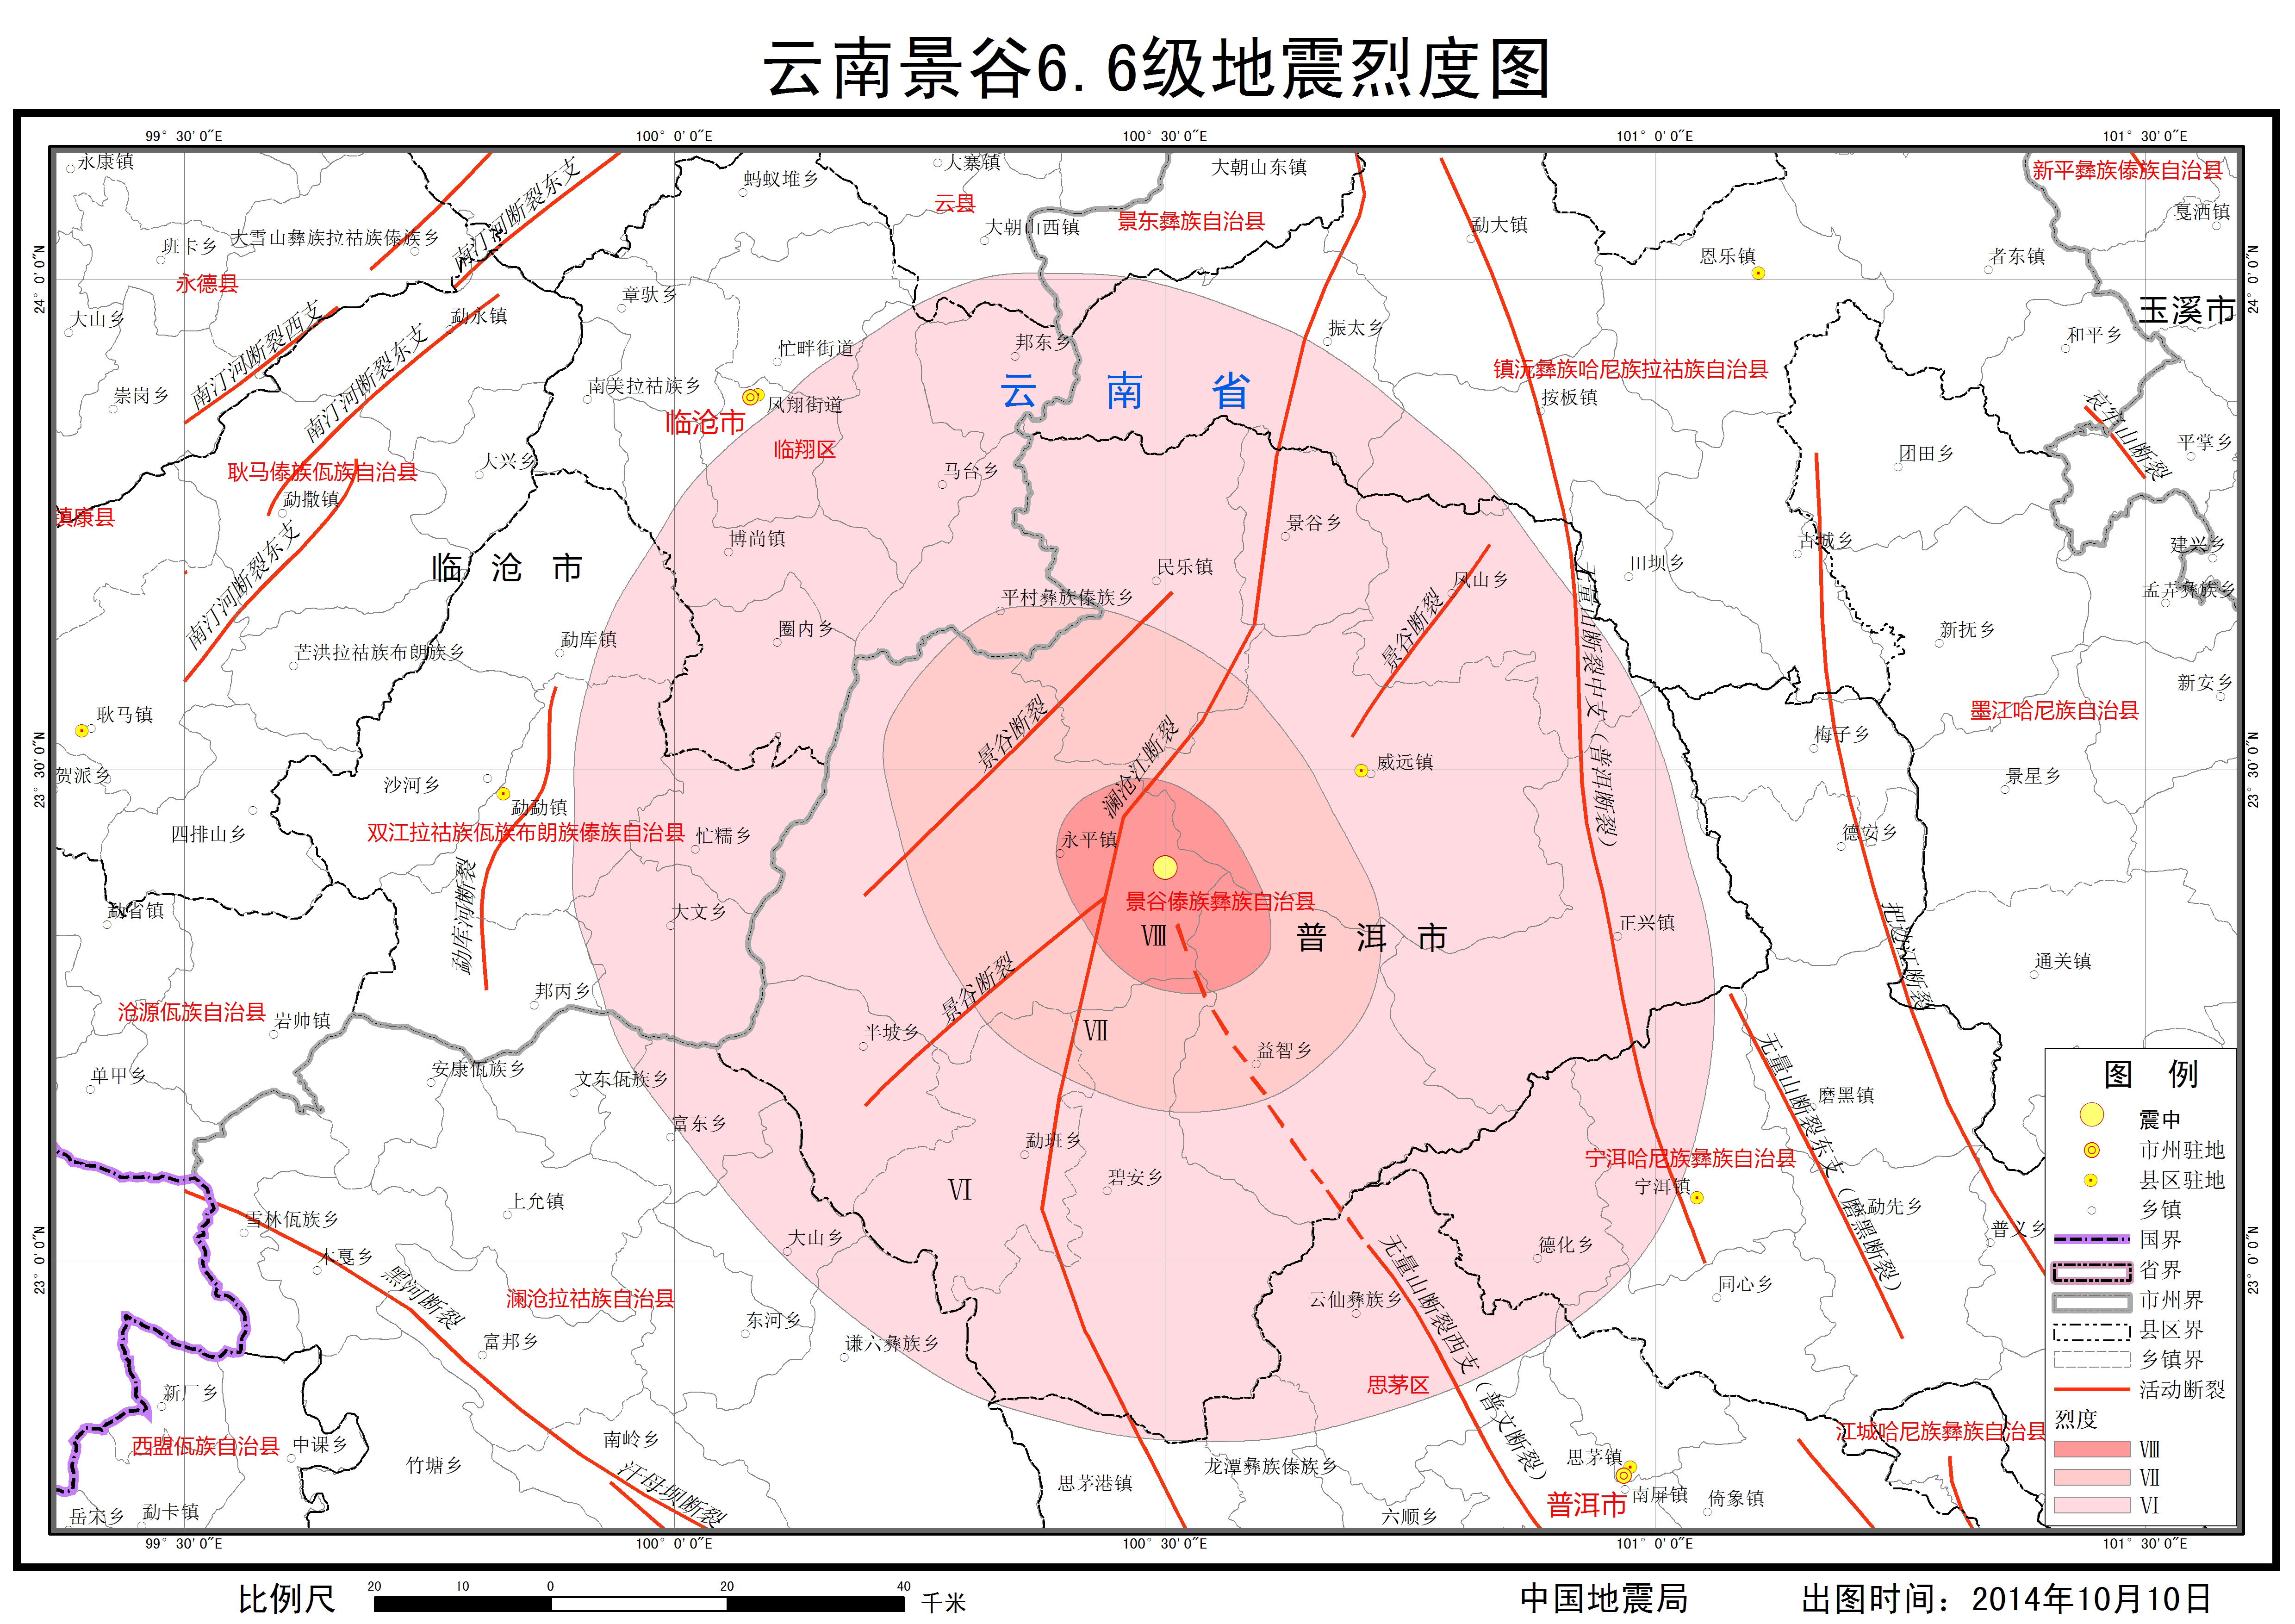 基于PCA及PSO智能算法的地震动合成方法—以中国西部中强地震为例